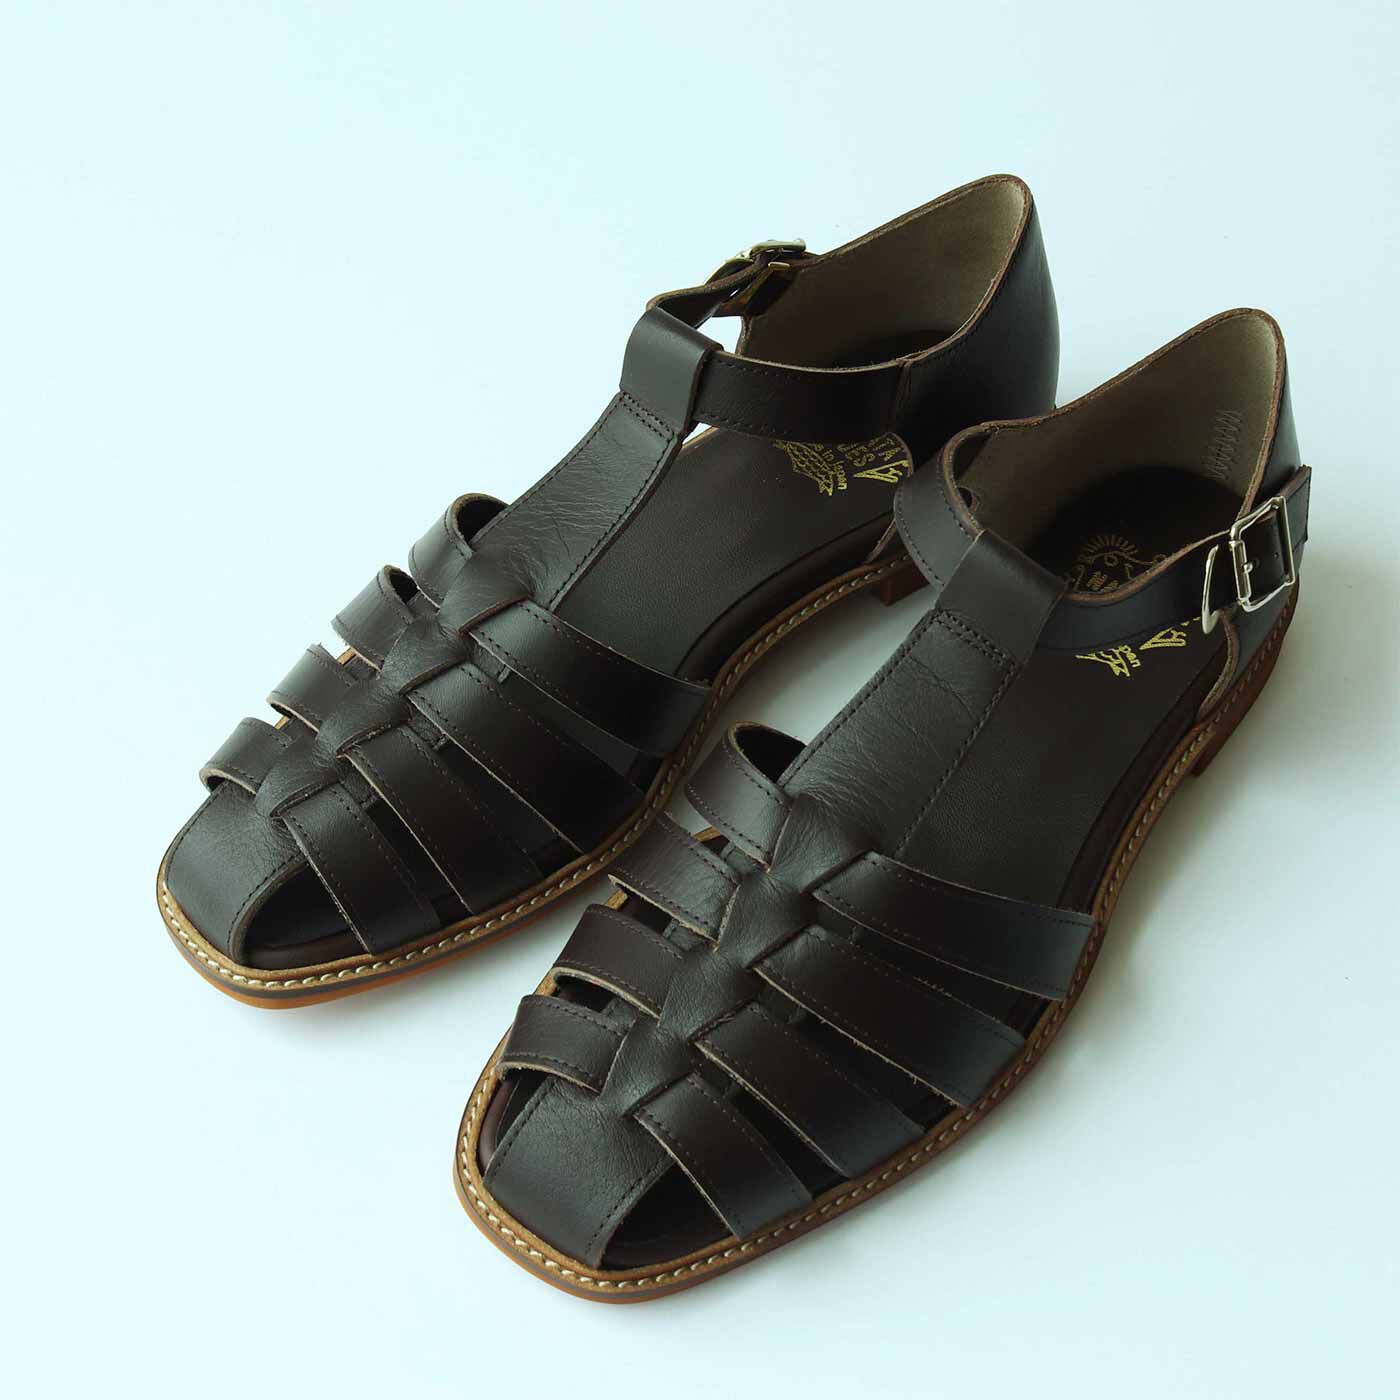 ＆Stories|靴デザイナーの理想で仕上げた 職人本革のフィッシャーマンシューズ〈ブラウン〉|サイズも10サイズ展開で21.5〜26cmと充実しています。